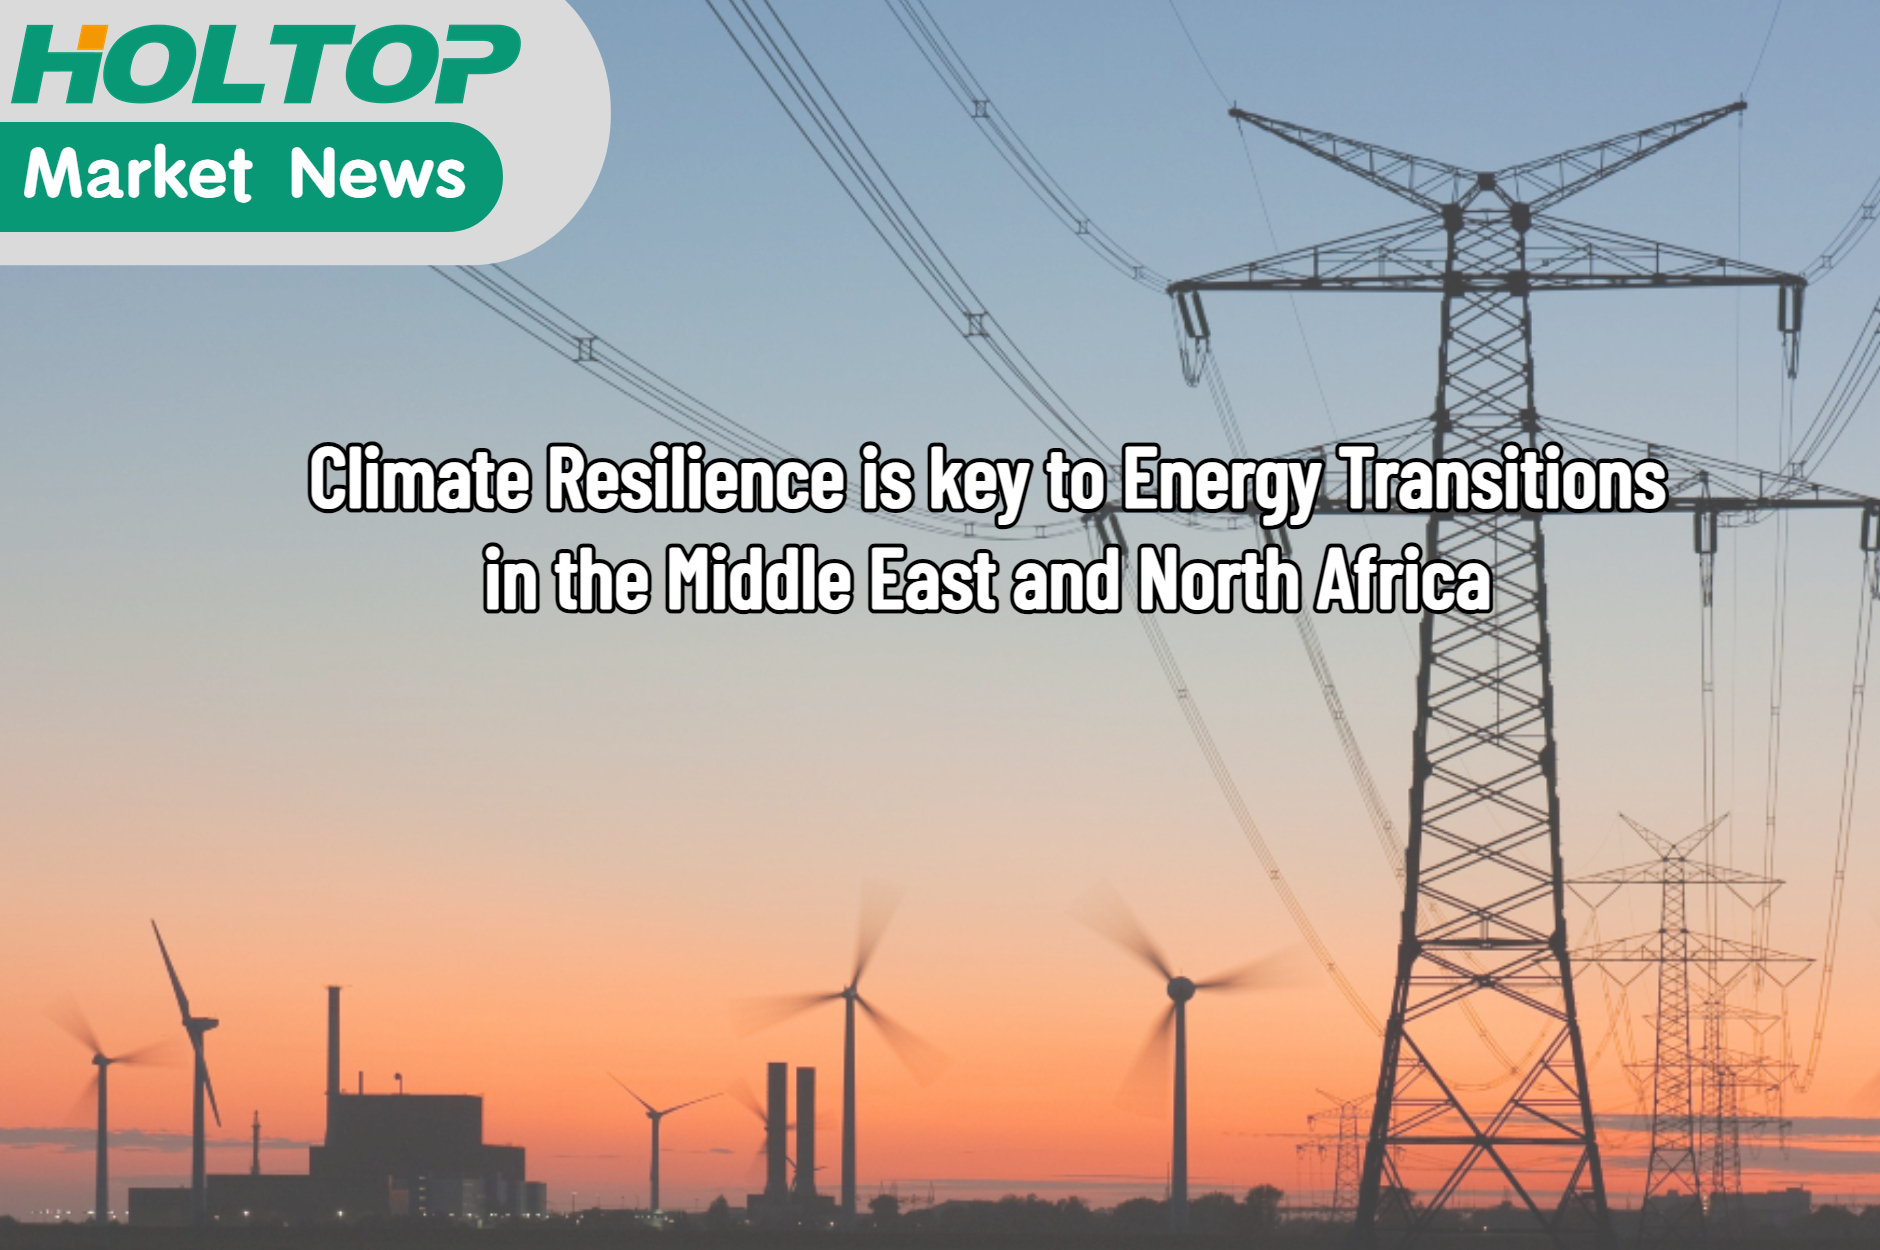 A resiliência climática é a chave para as transições energéticas no MENA